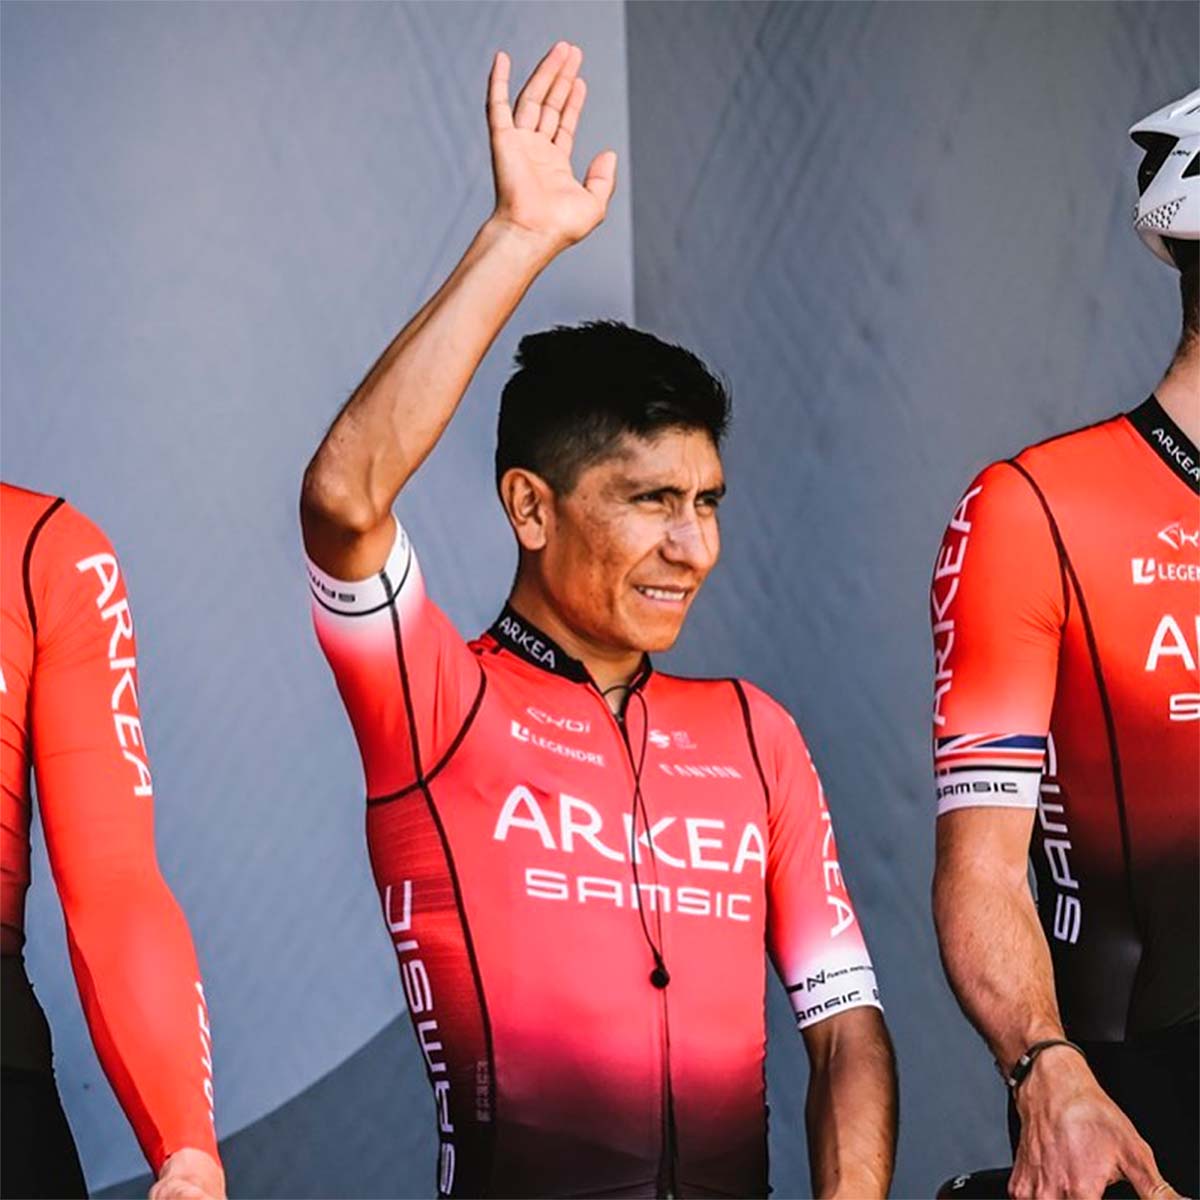 En TodoMountainBike: Nairo Quintana renuncia a La Vuelta a España: "Volveré al calendario de carreras al final de la temporada"